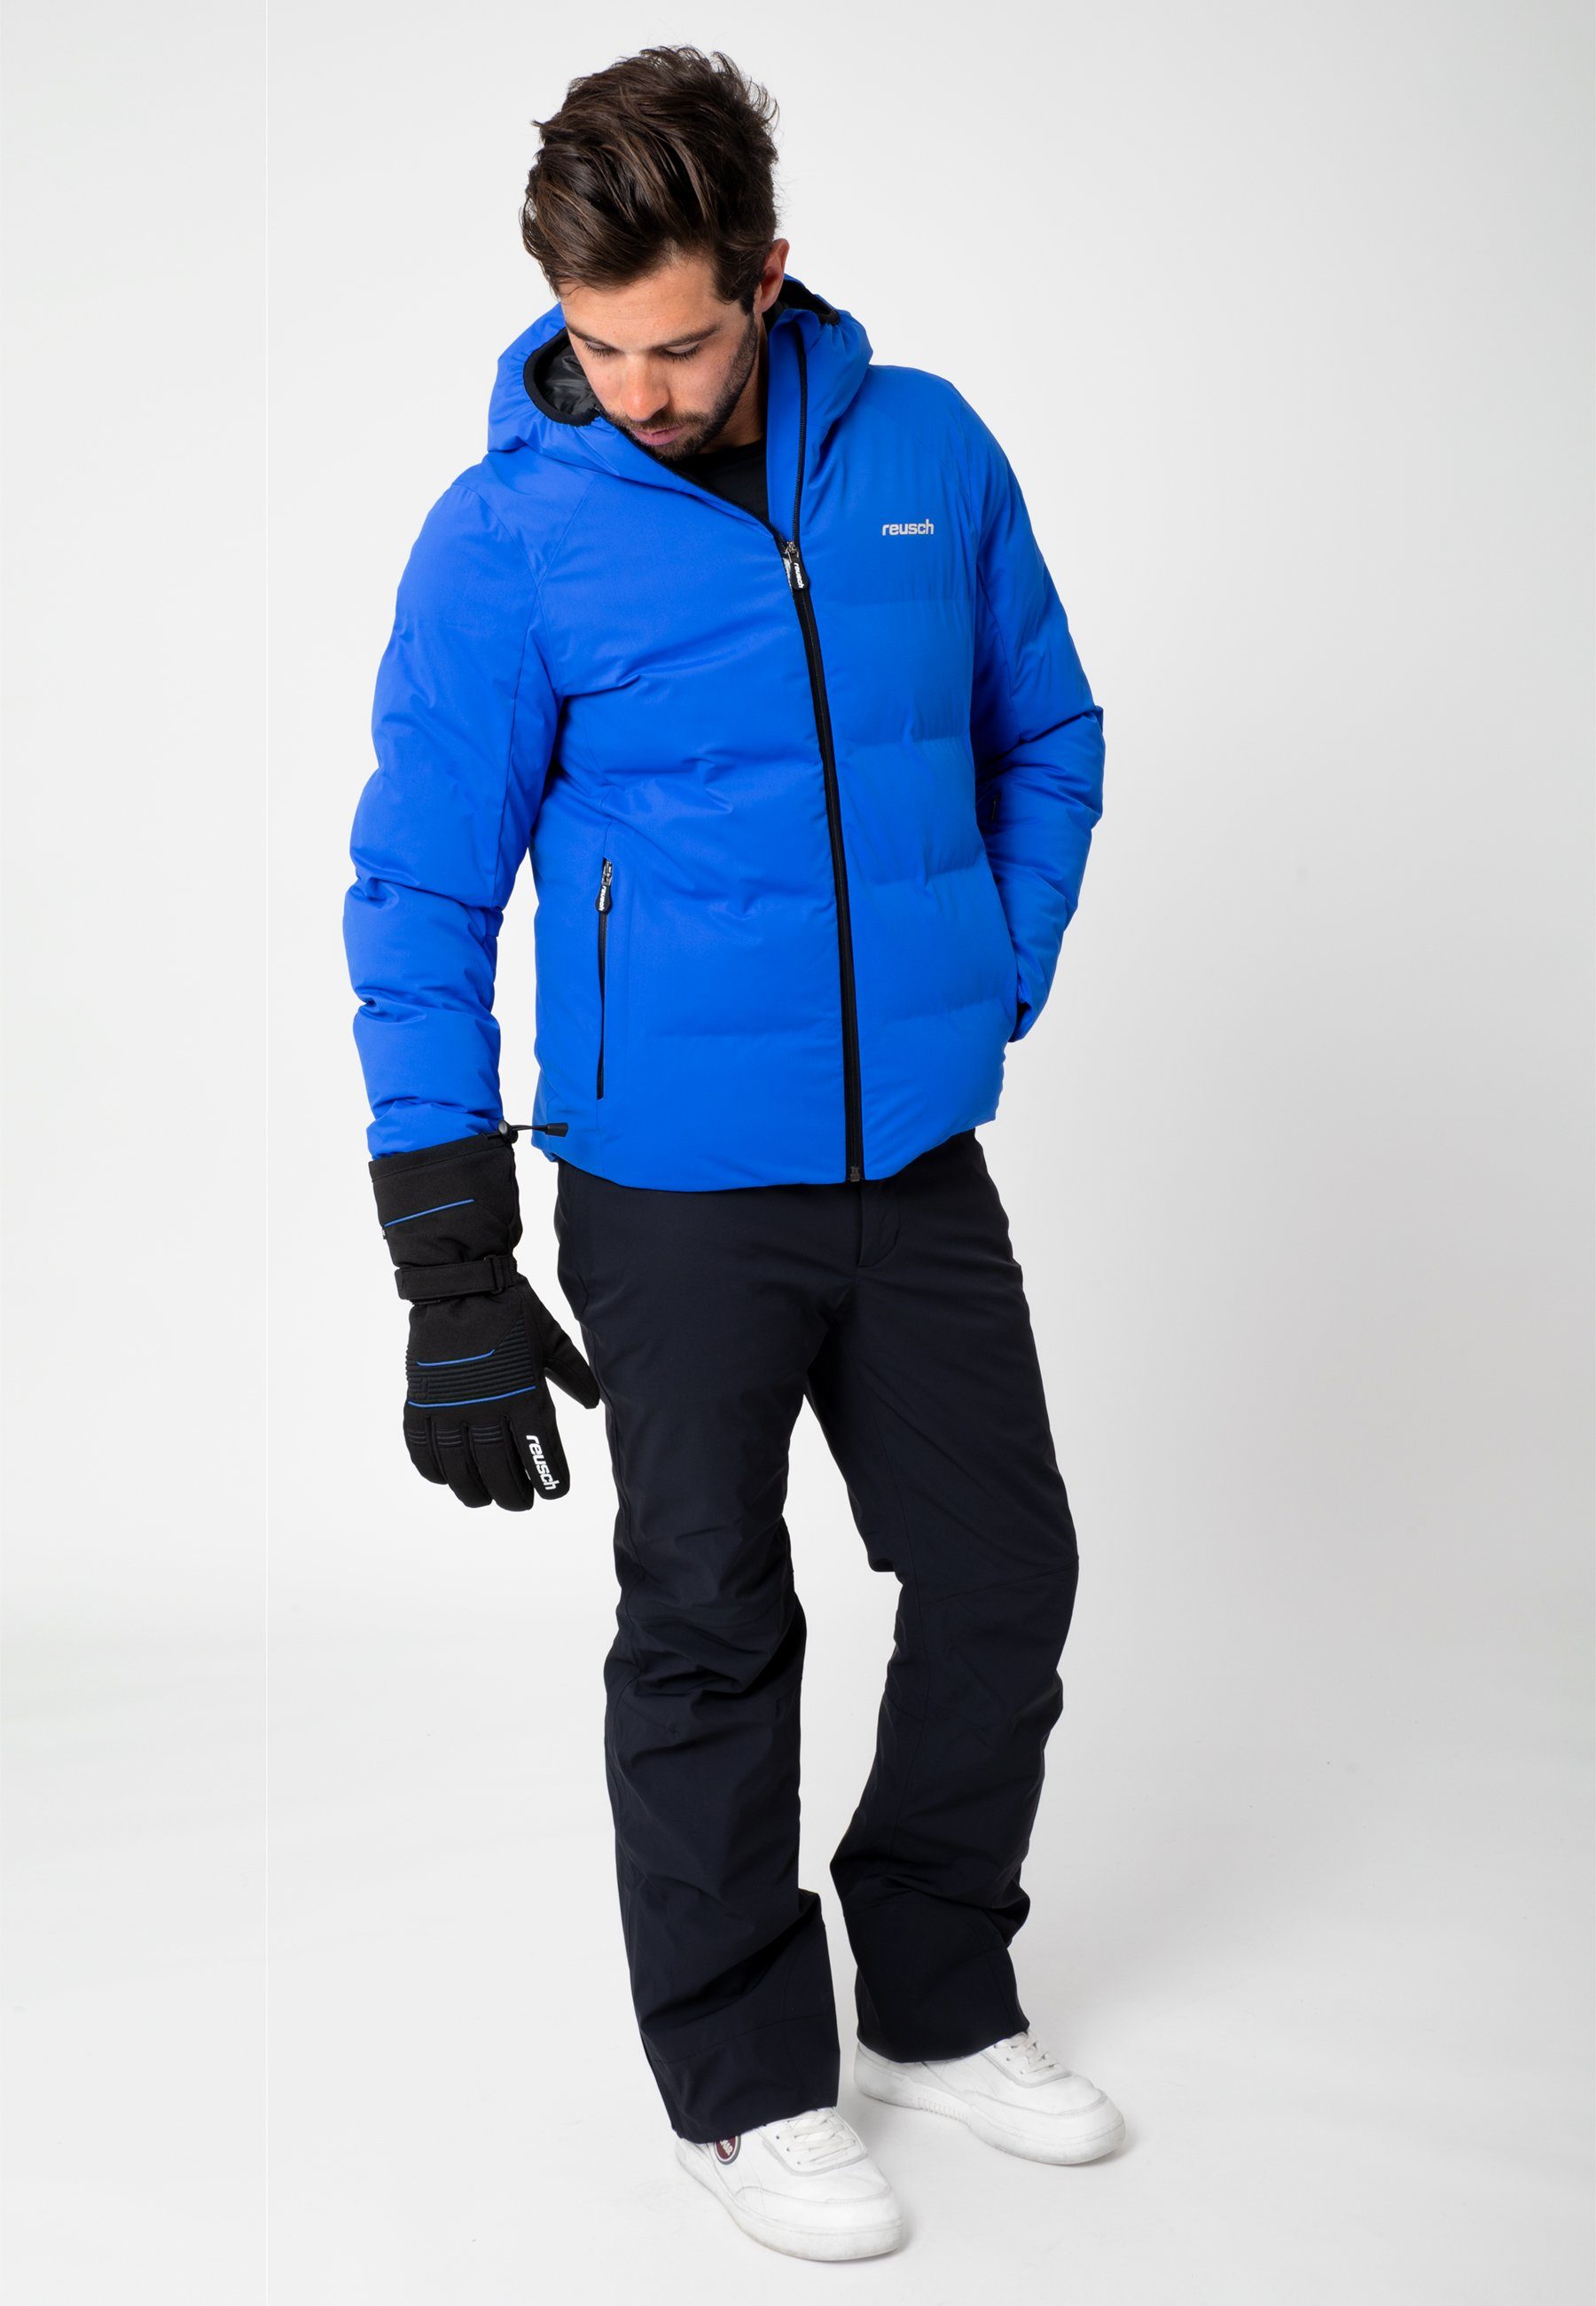 Skihandschuhe Crosby Reusch Design XT in blau-schwarz sportlichem R-TEX®